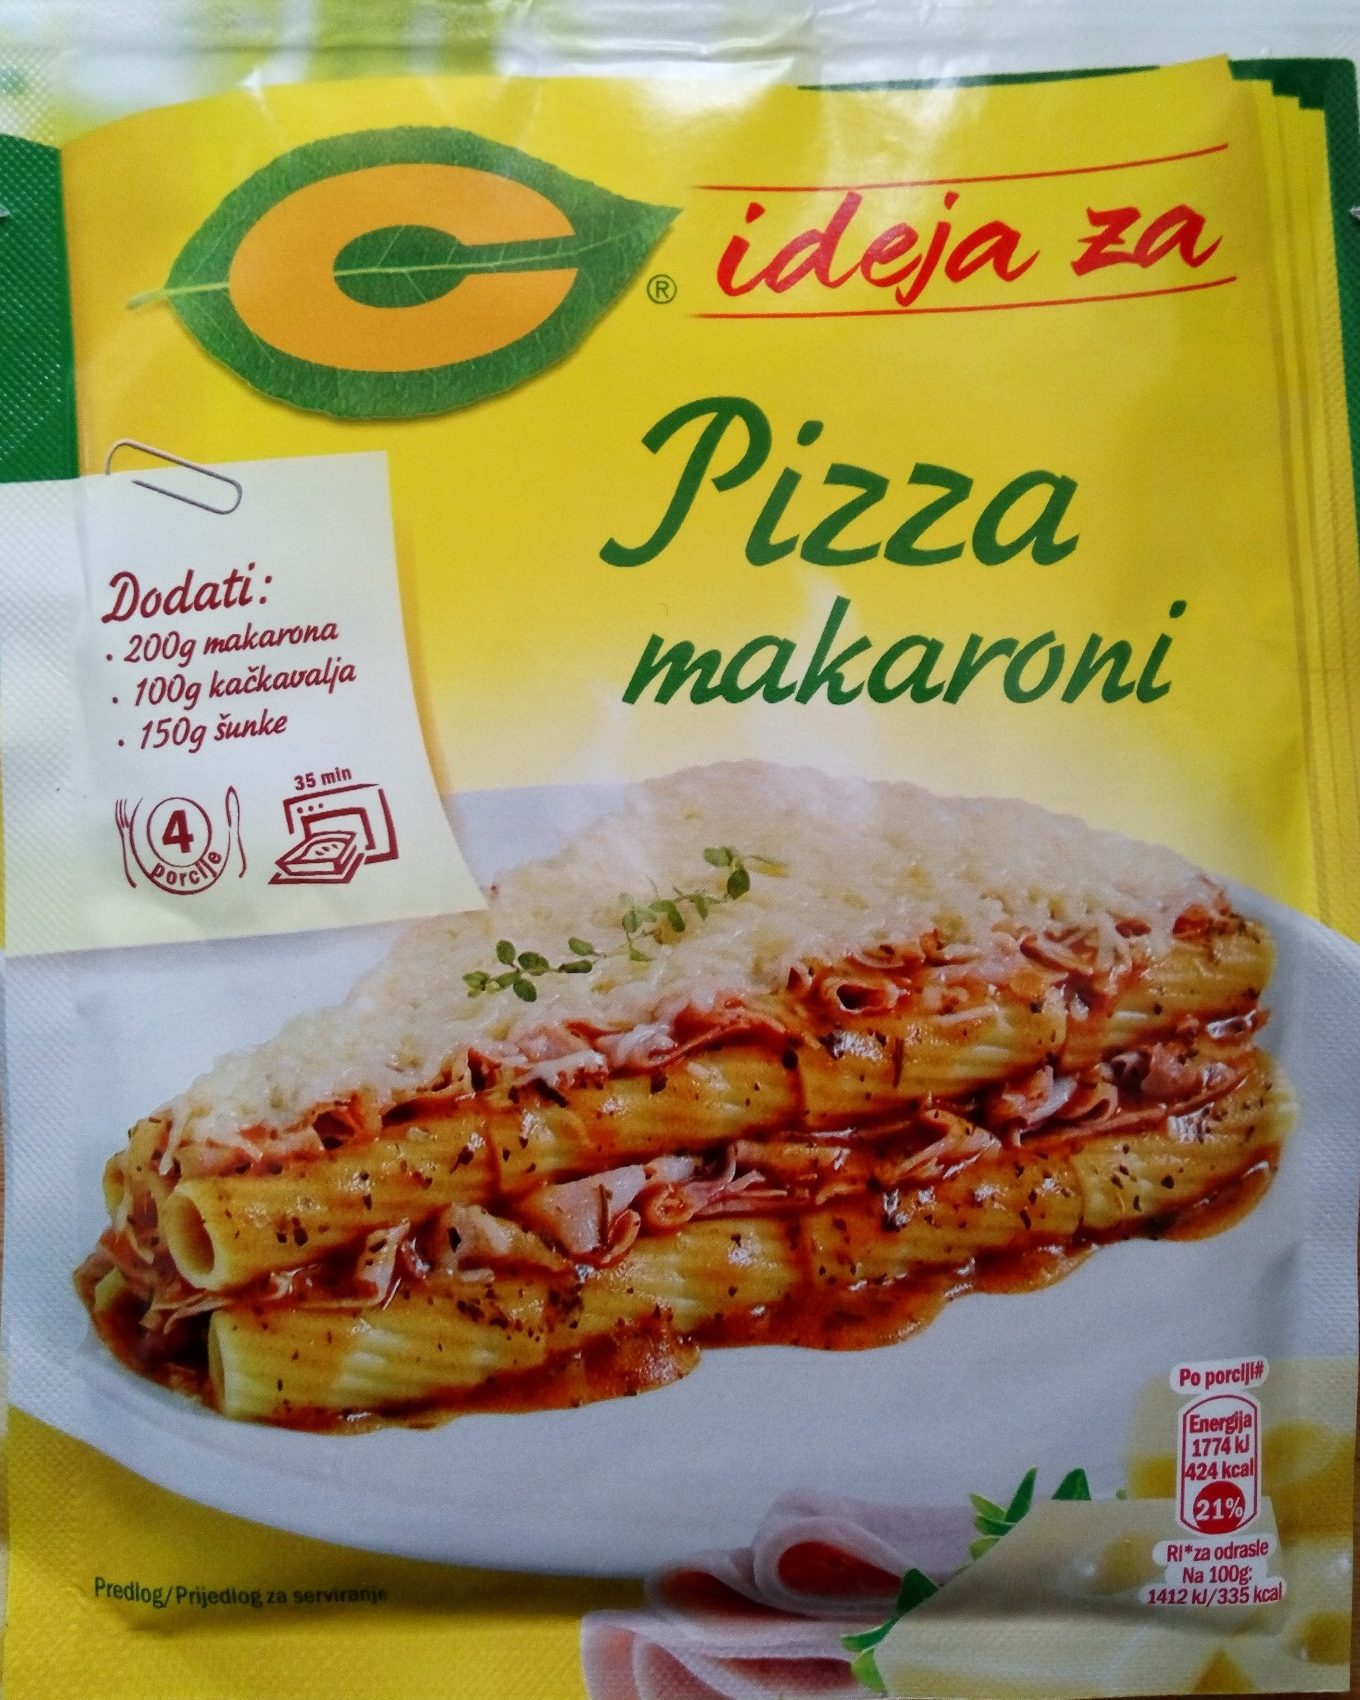 C ideja za Pizza makaroni - Производ